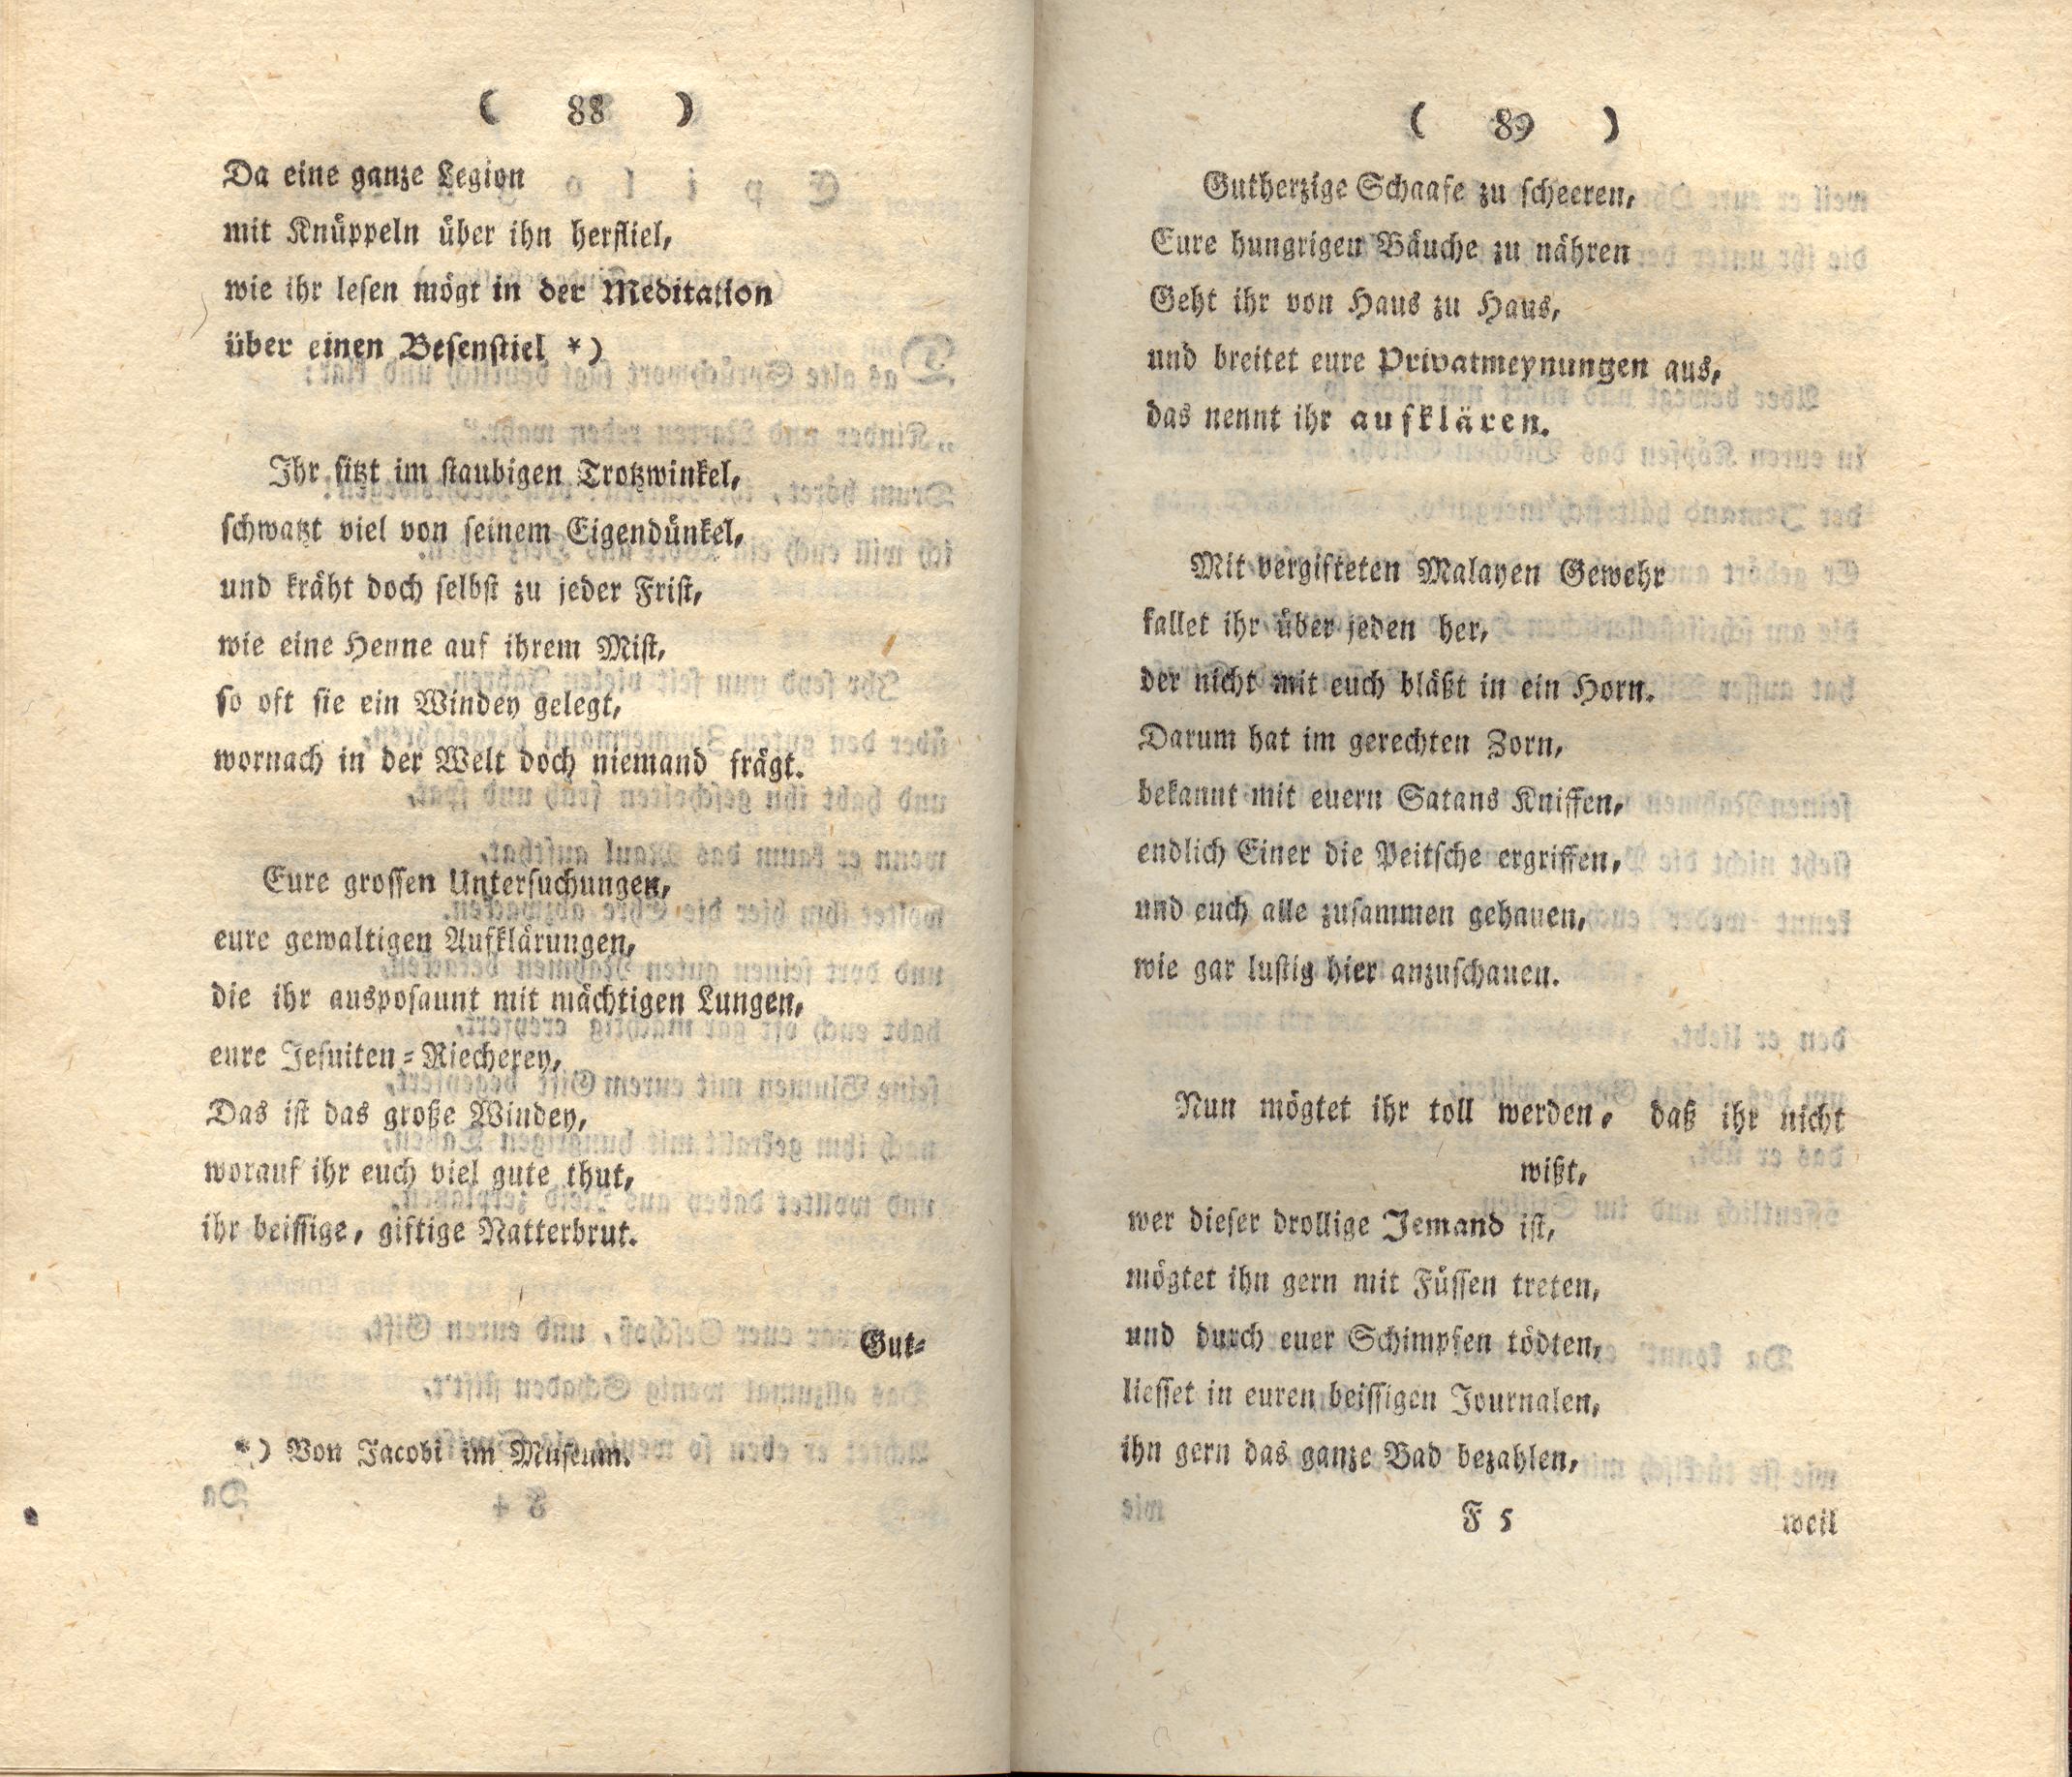 Doctor Bahrdt mit der eisernen Stirn (1790) | 46. (88-89) Основной текст